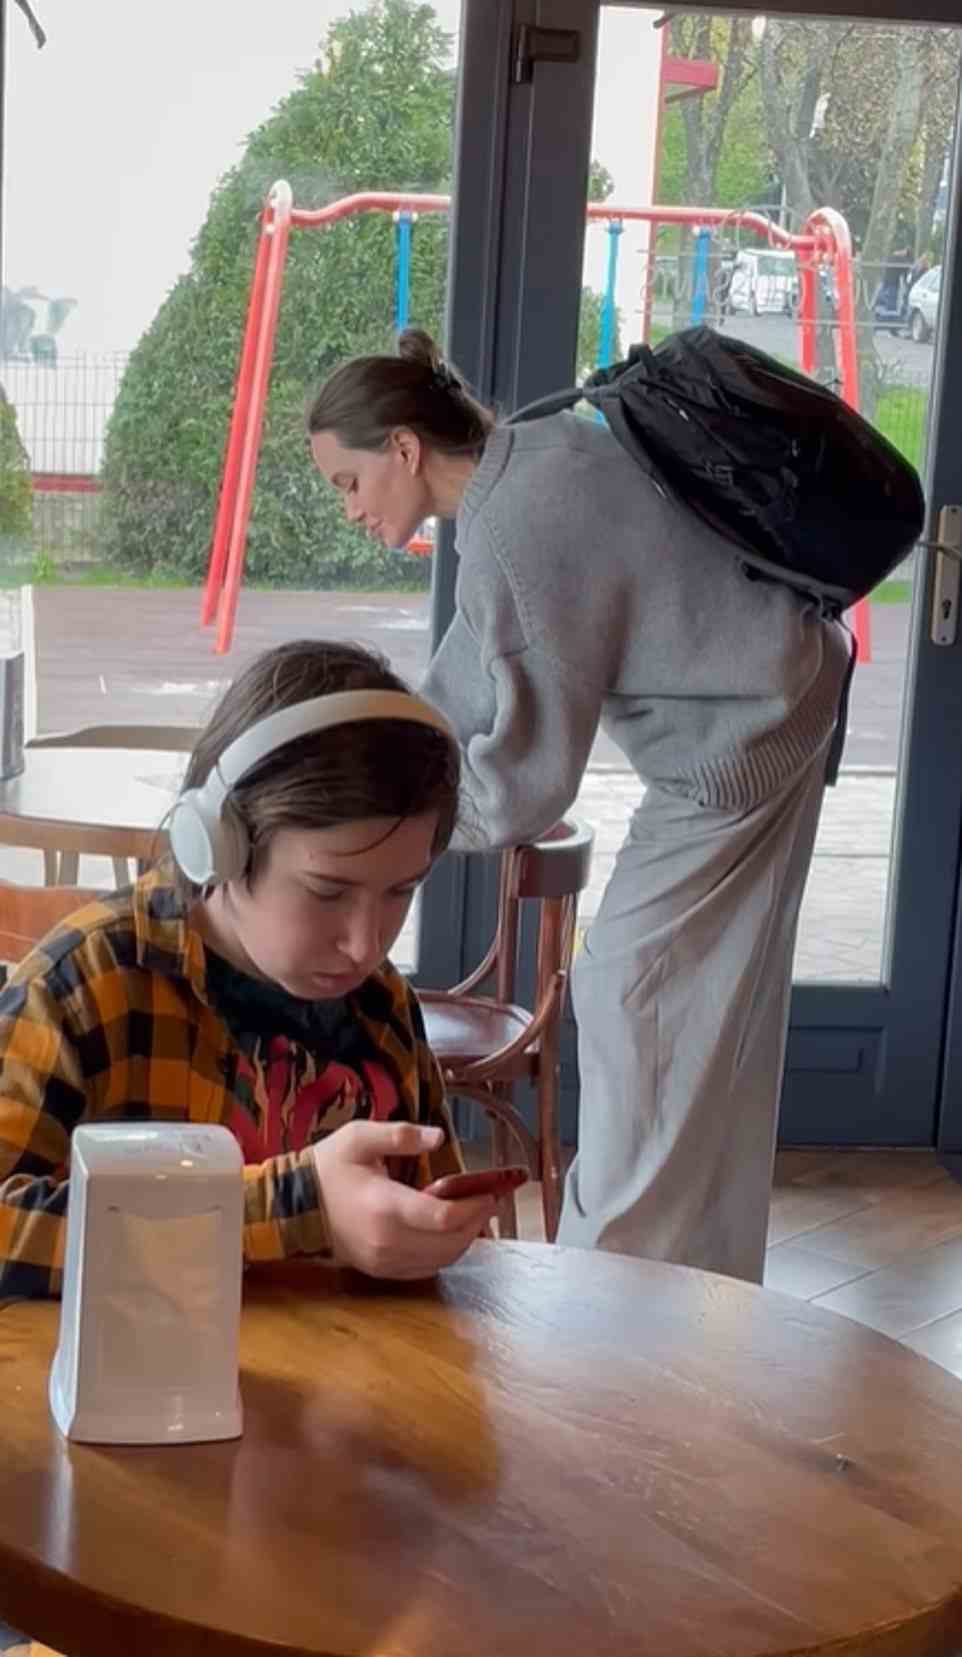 Die Schauspielerin Angelina Jolie überraschte die Ukrainer, nachdem sie in einem Café in Lemberg aufgetaucht war.  Ein Junge an seinem Telefon bemerkte die weltberühmte Schauspielerin nicht, als sie hinter ihm in das Café kam